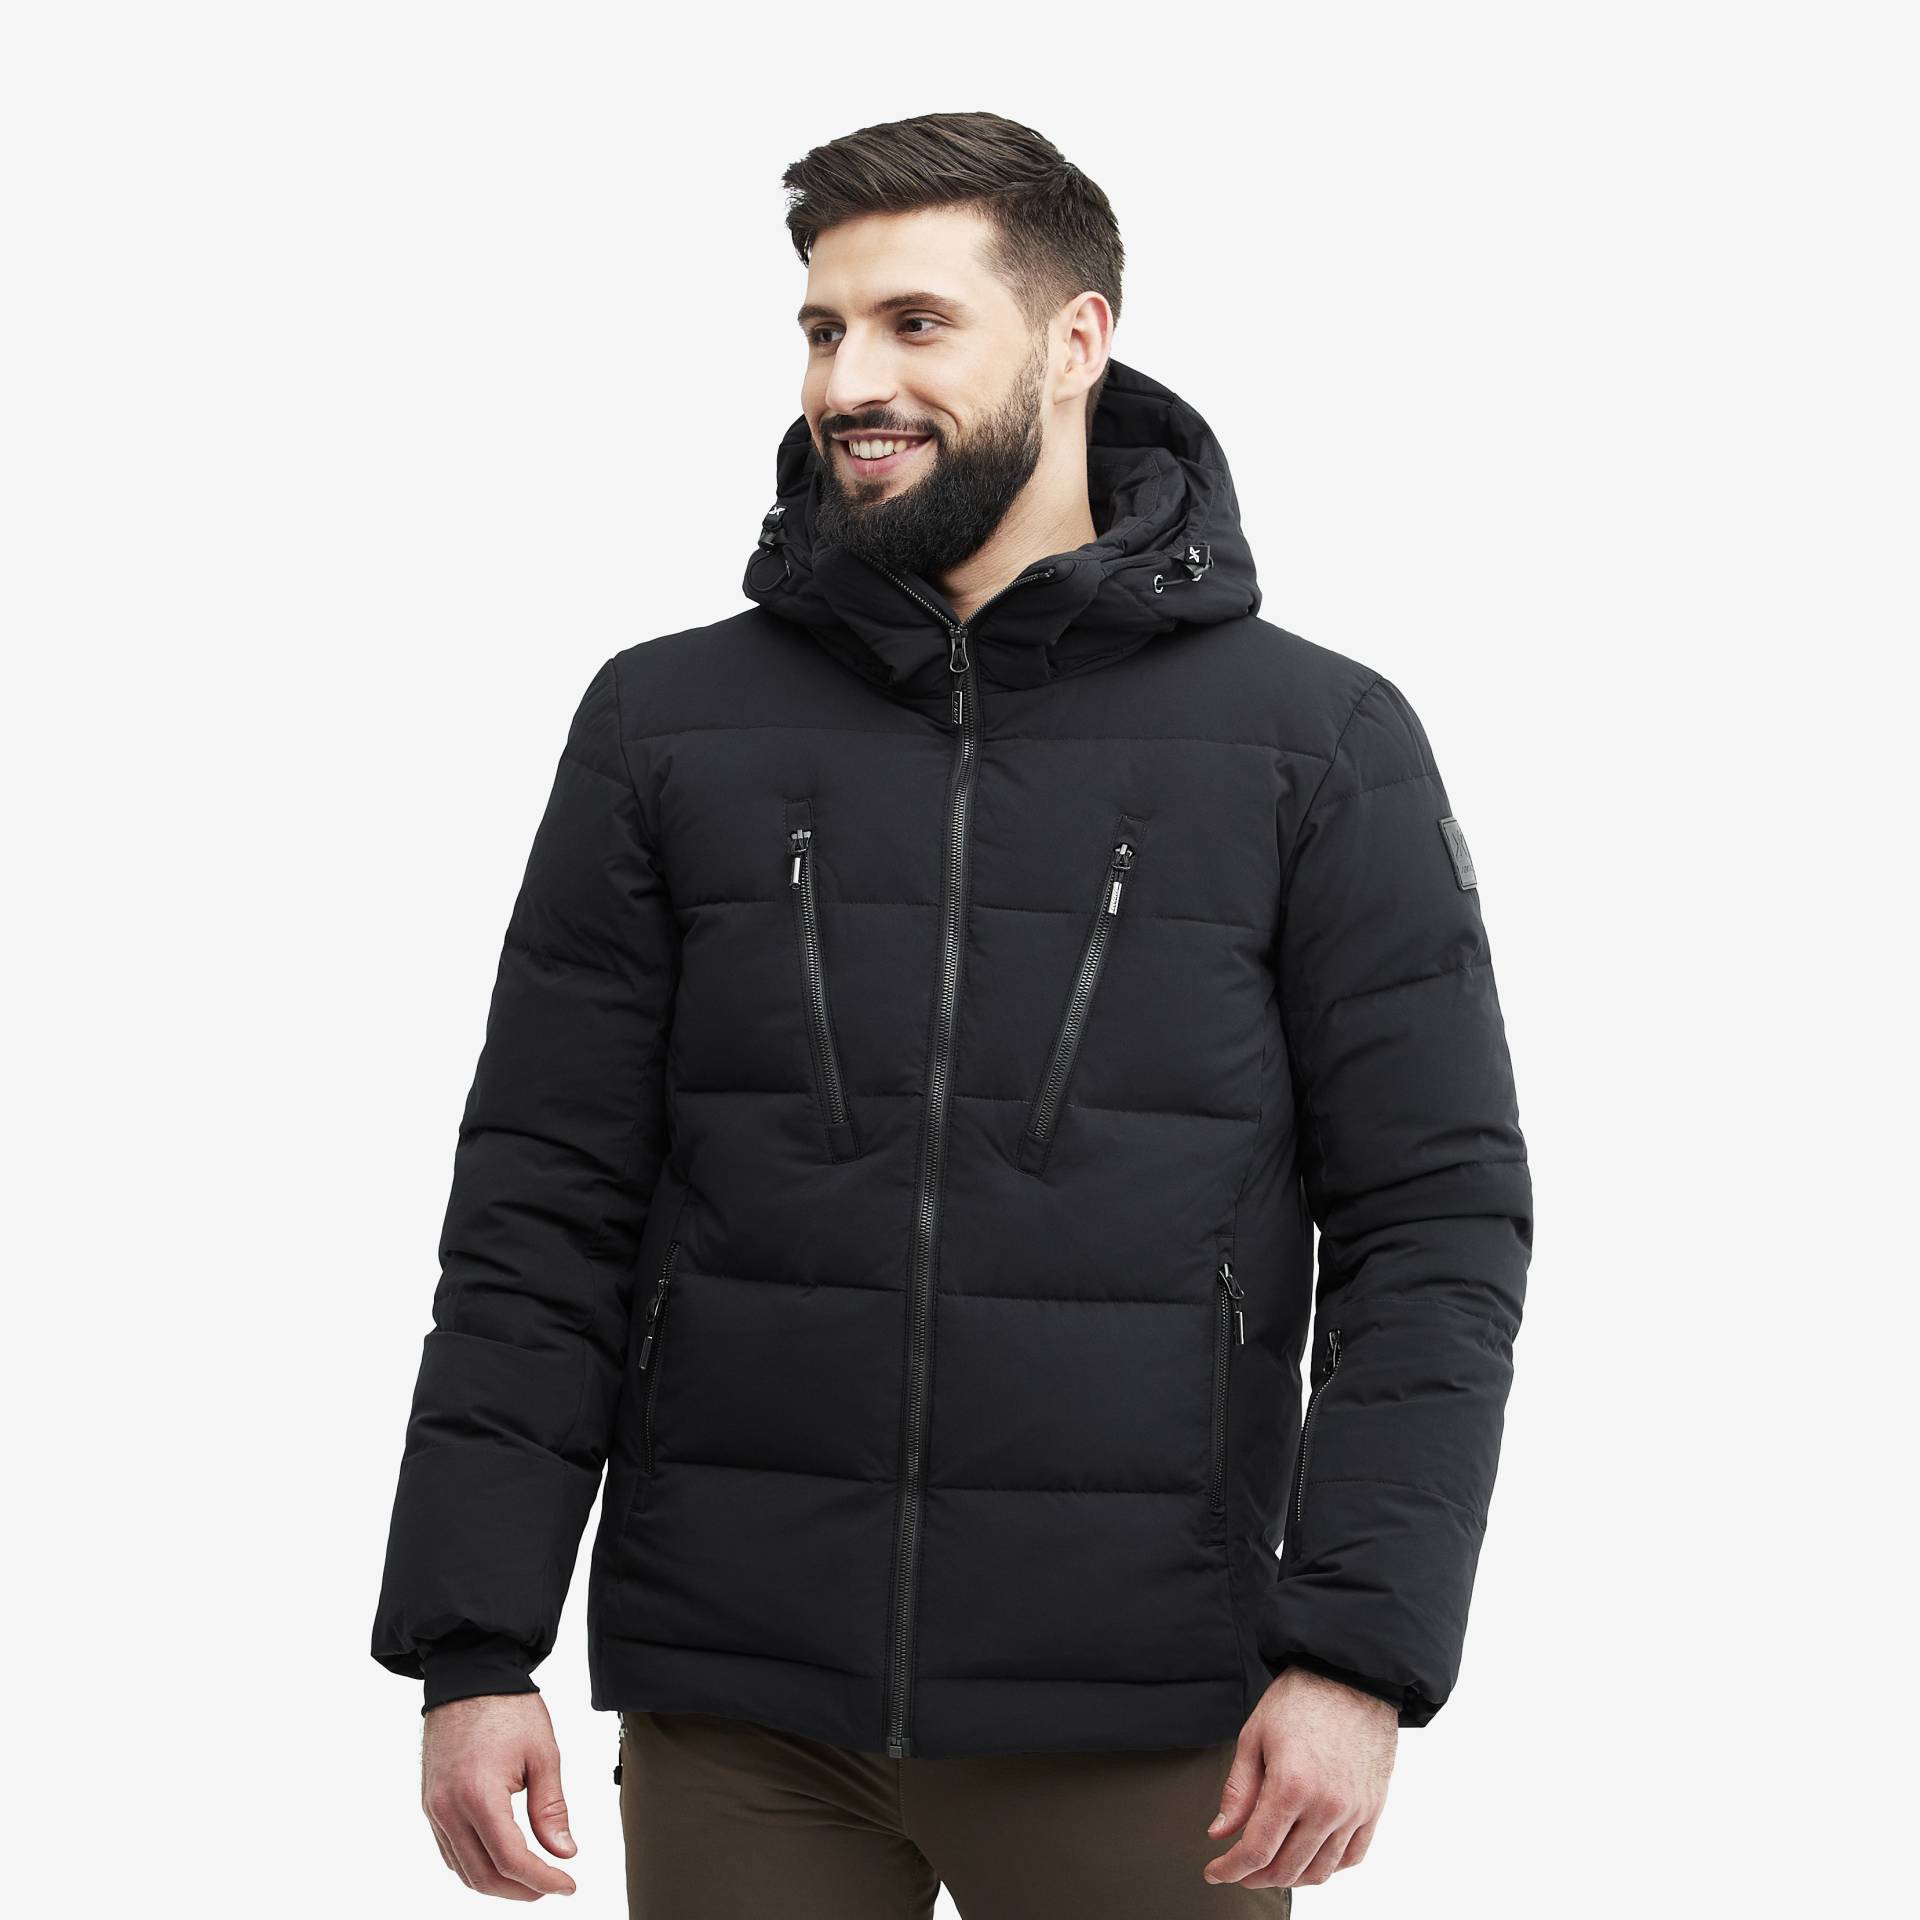 Igloo Jacket Herren Black, Größe:L - Skijacken von RevolutionRace